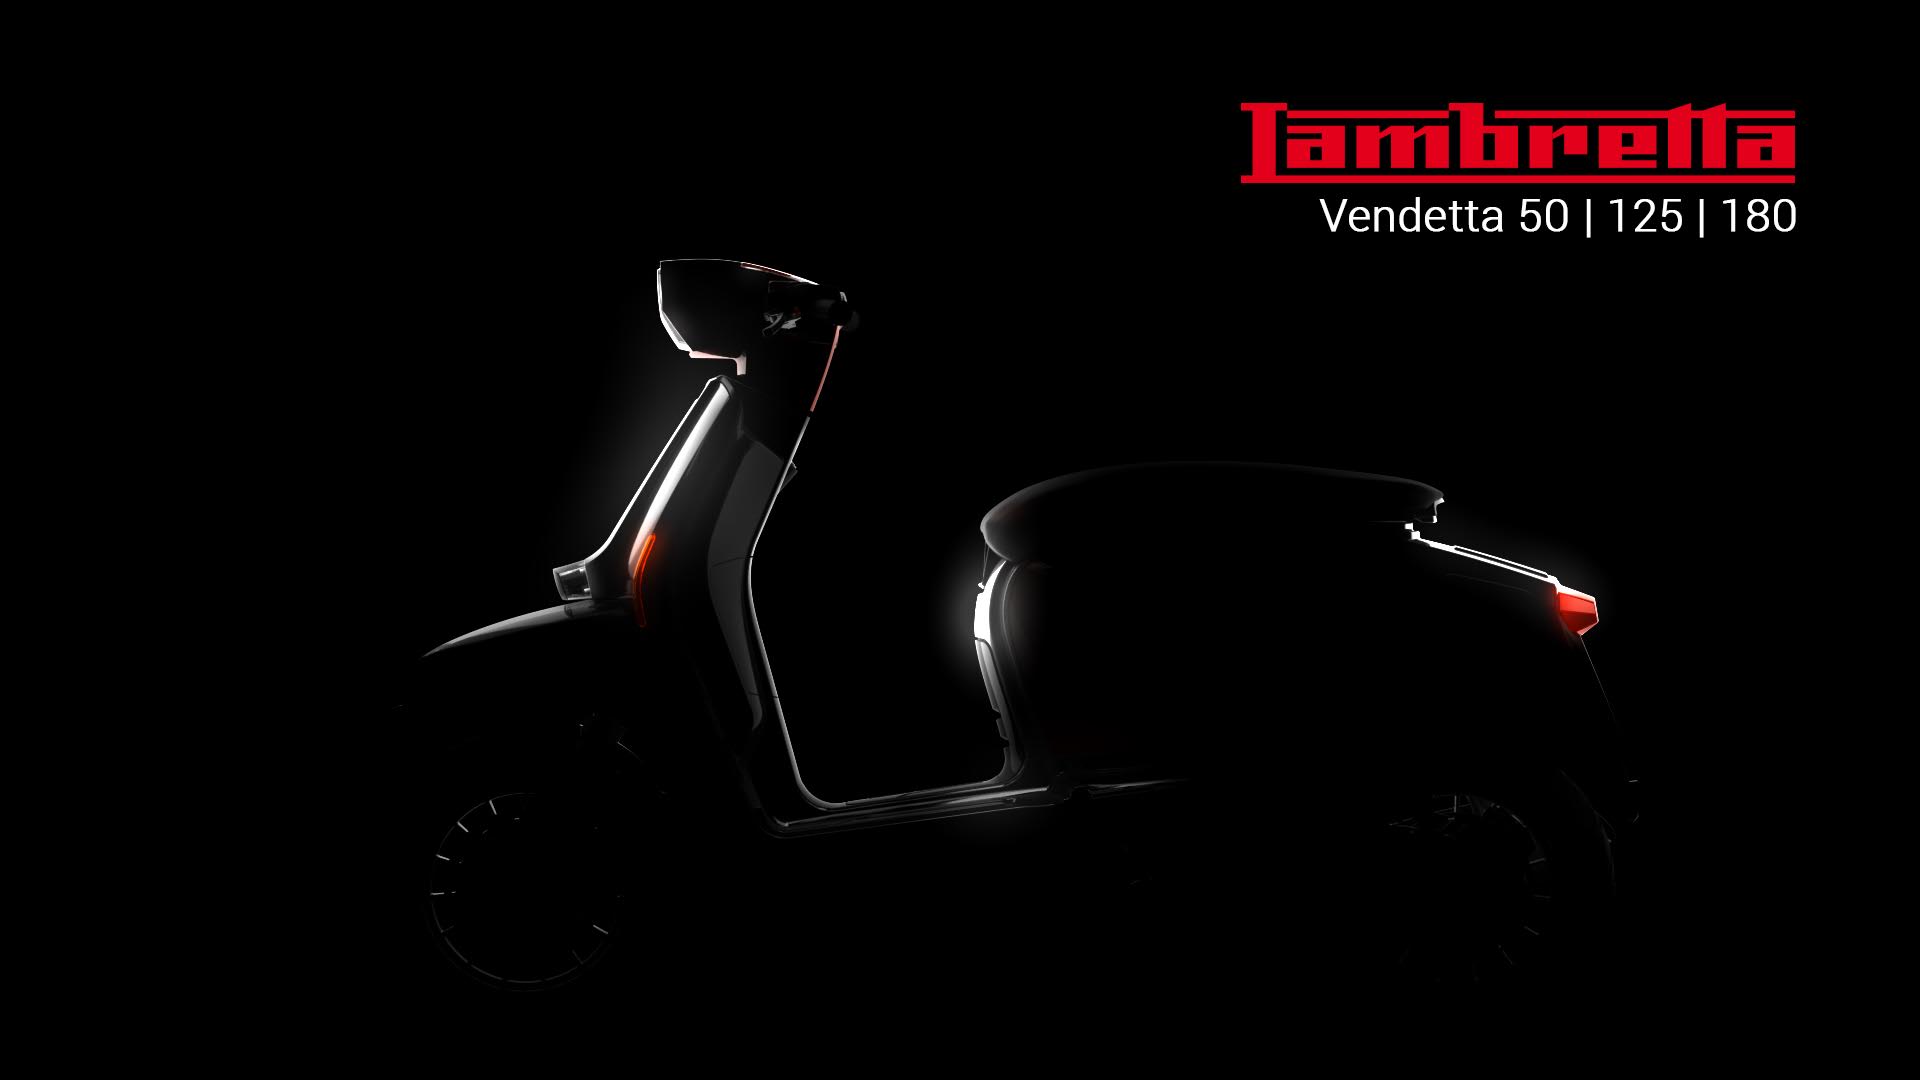 Νέα Lambretta Vendetta 50/125/180 - 2017